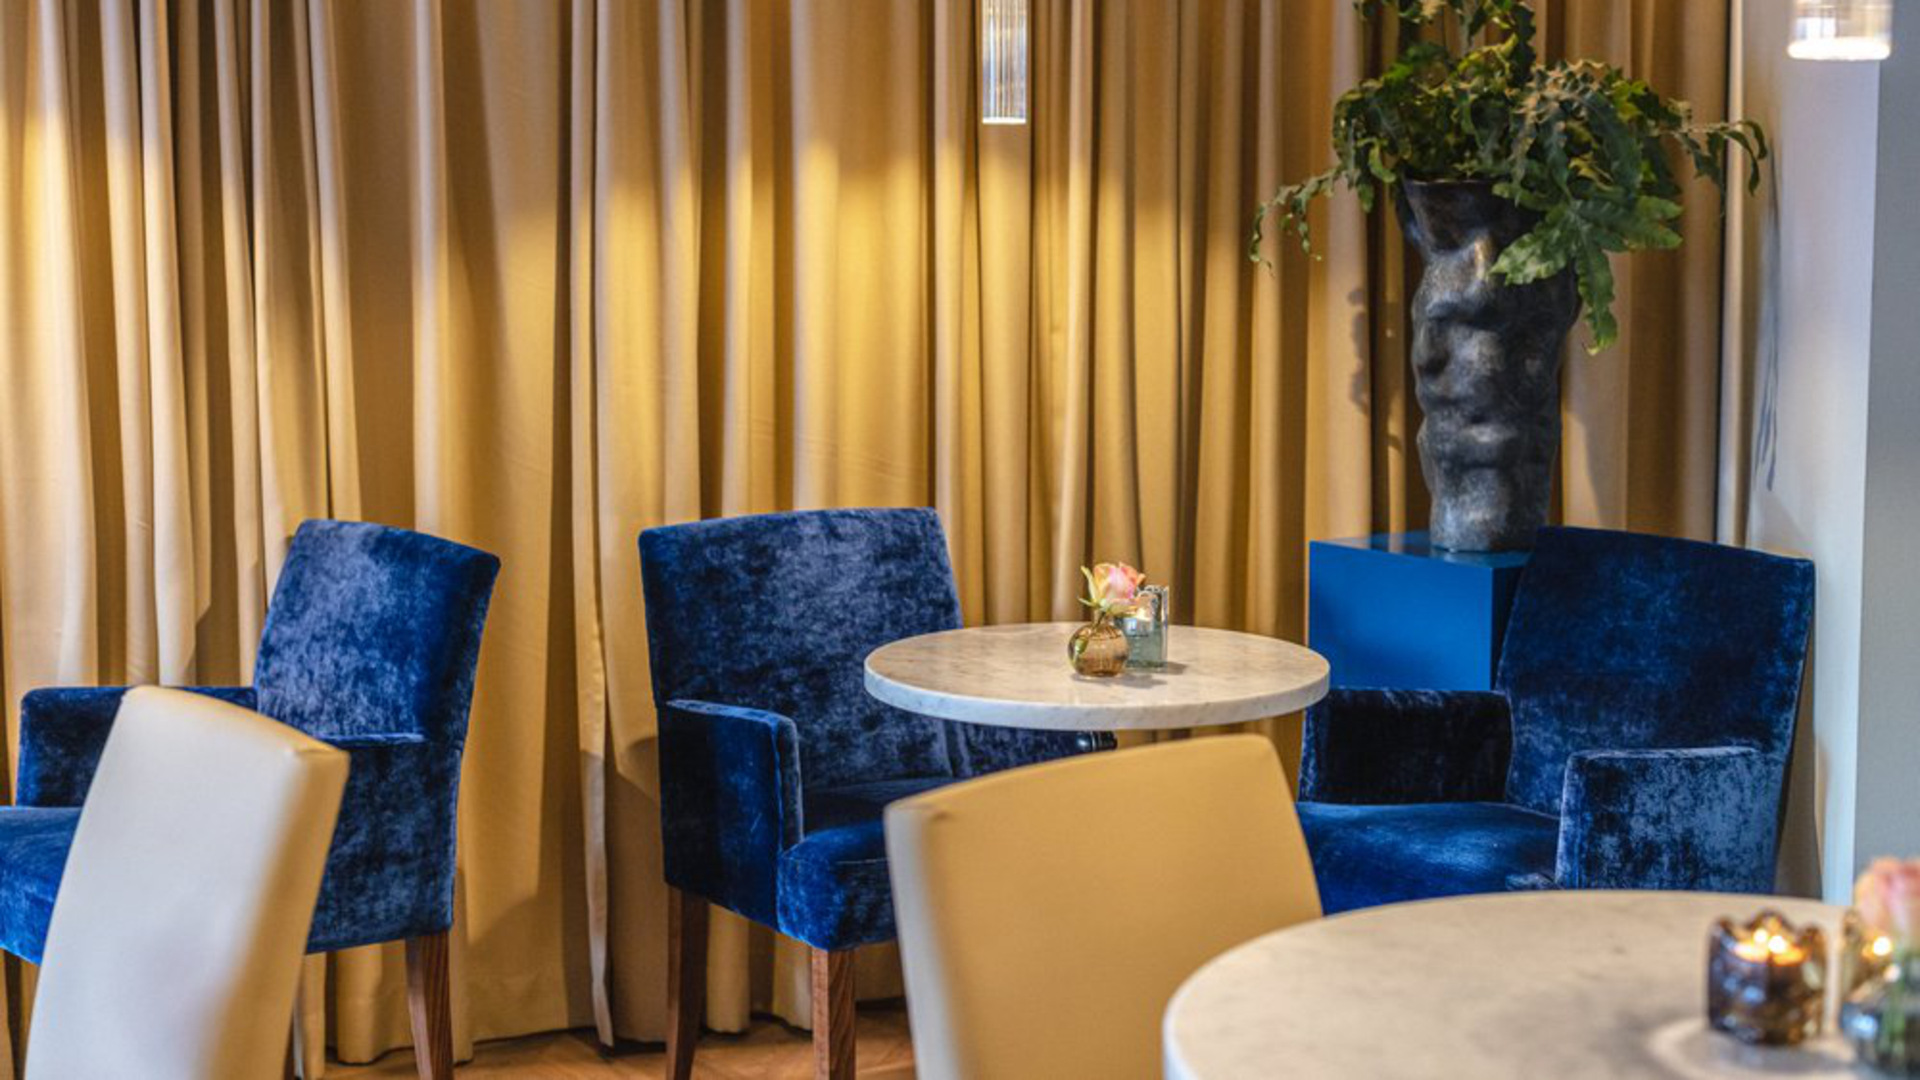 Blå sammetsbeklädda stolar, runda bord, interiört café.